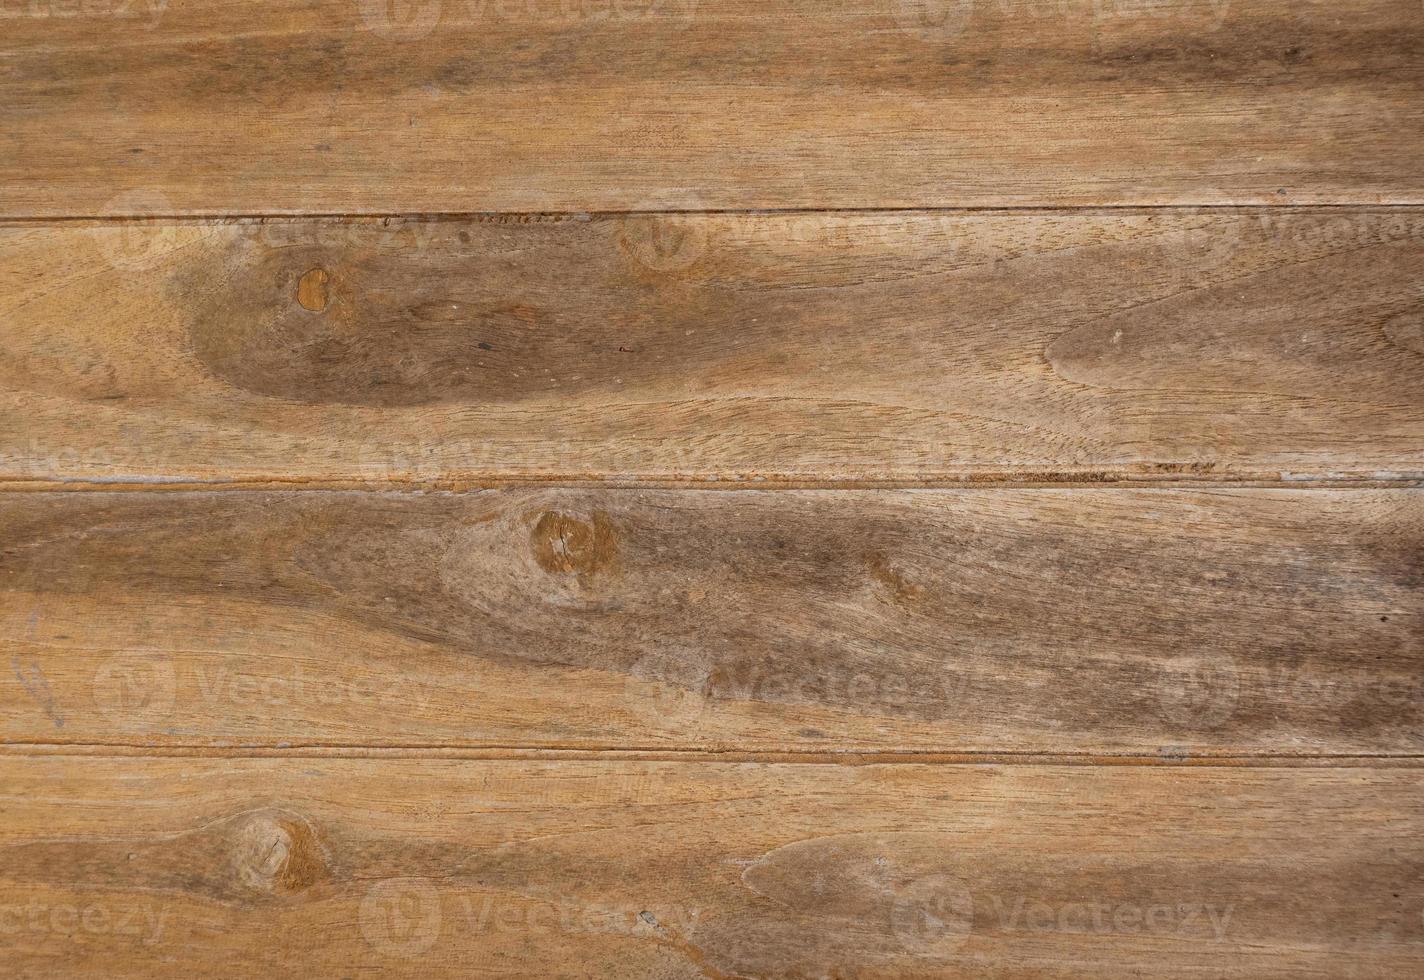 textura de madera vieja, se puede utilizar para mostrar o montar sus productos. foto